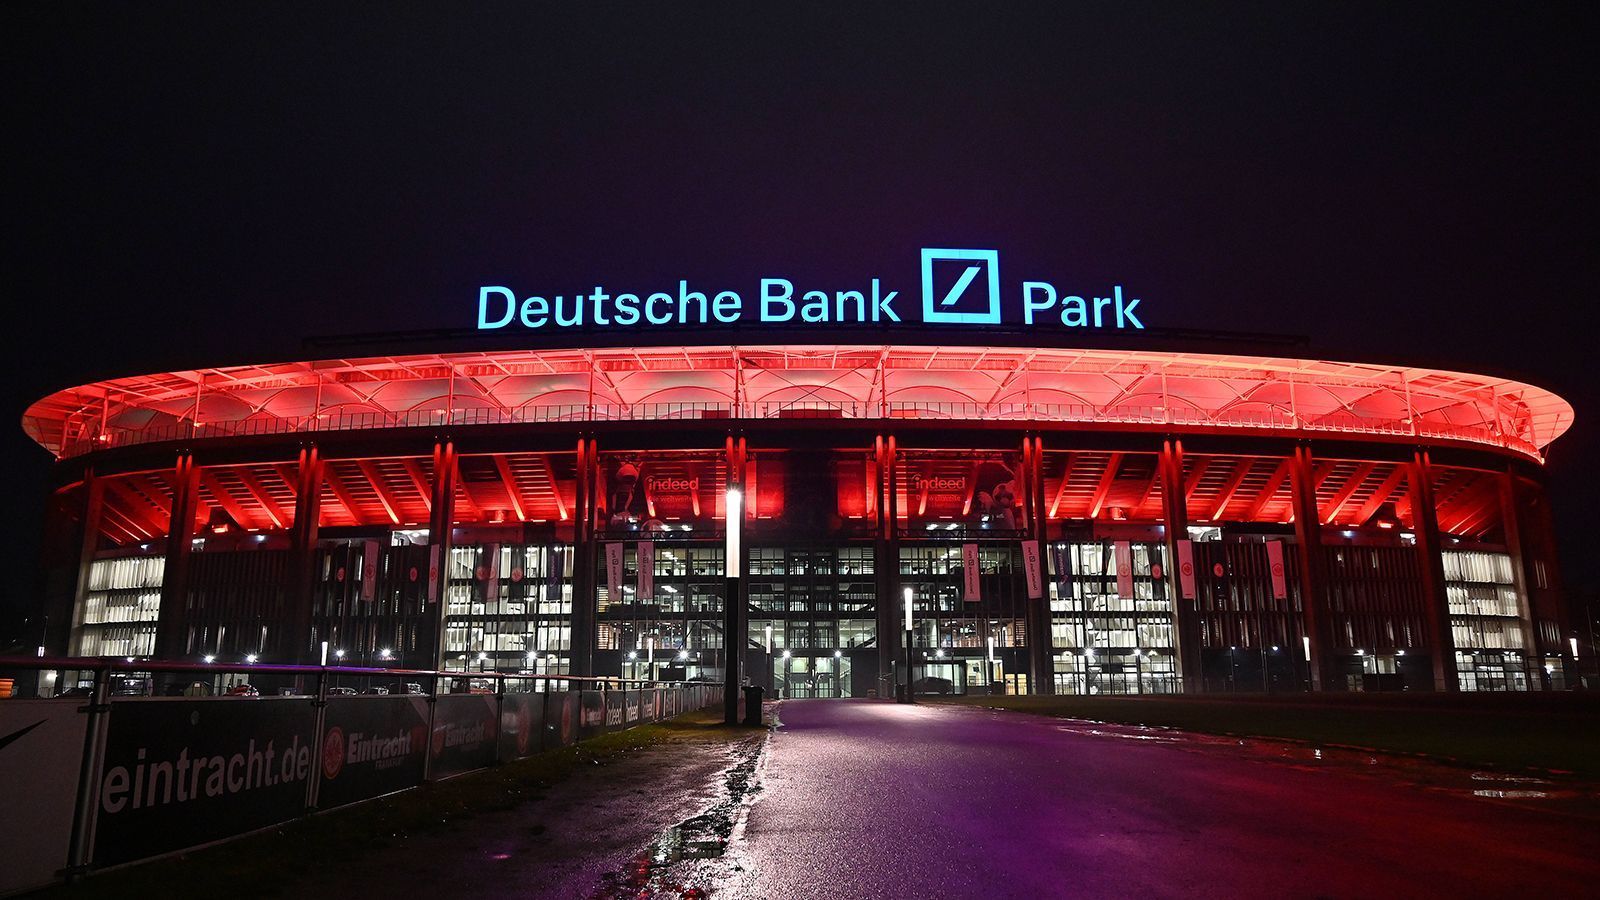 
                <strong>Eintracht Frankfurt </strong><br>
                &#x2022; Aktueller Name: Deutsche Bank Park (vorher Commerzbank Arena)<br>&#x2022; Alter Name: Waldstadion<br>&#x2022; Eröffnung des Stadions: Mai 1925<br>&#x2022; Jahr der Übernahme: 2020<br>
              